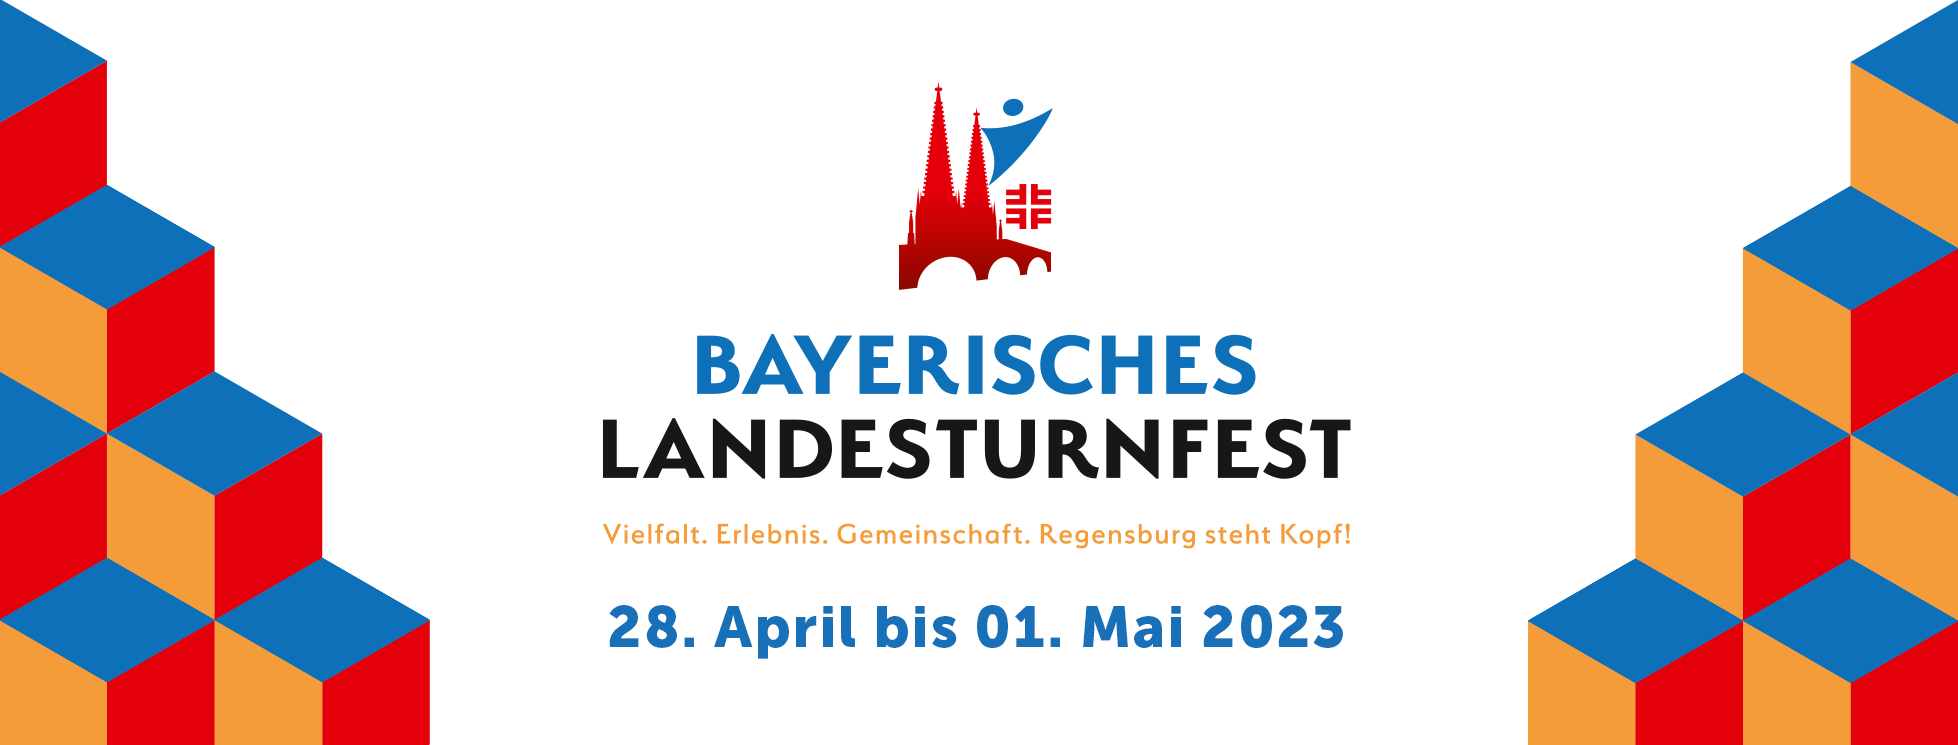 Bayrisches Landesturnfest Regensburg 2023